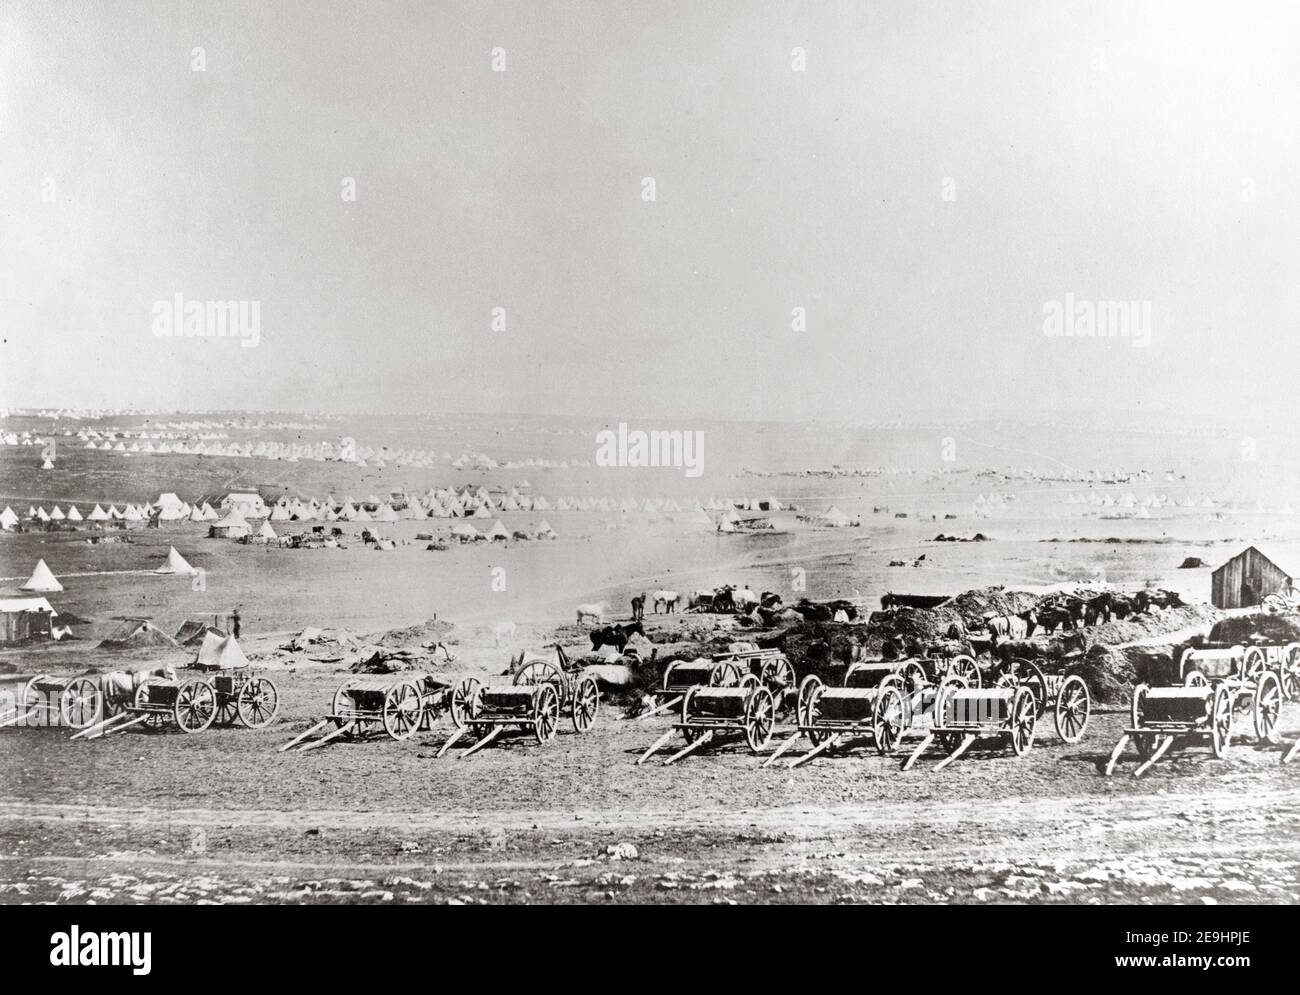 Photographie du XIXe siècle - Roger Fenton (1819-1869), Guerre de Crimée, le plateau de Sebastopol, Crimée 1850 Banque D'Images